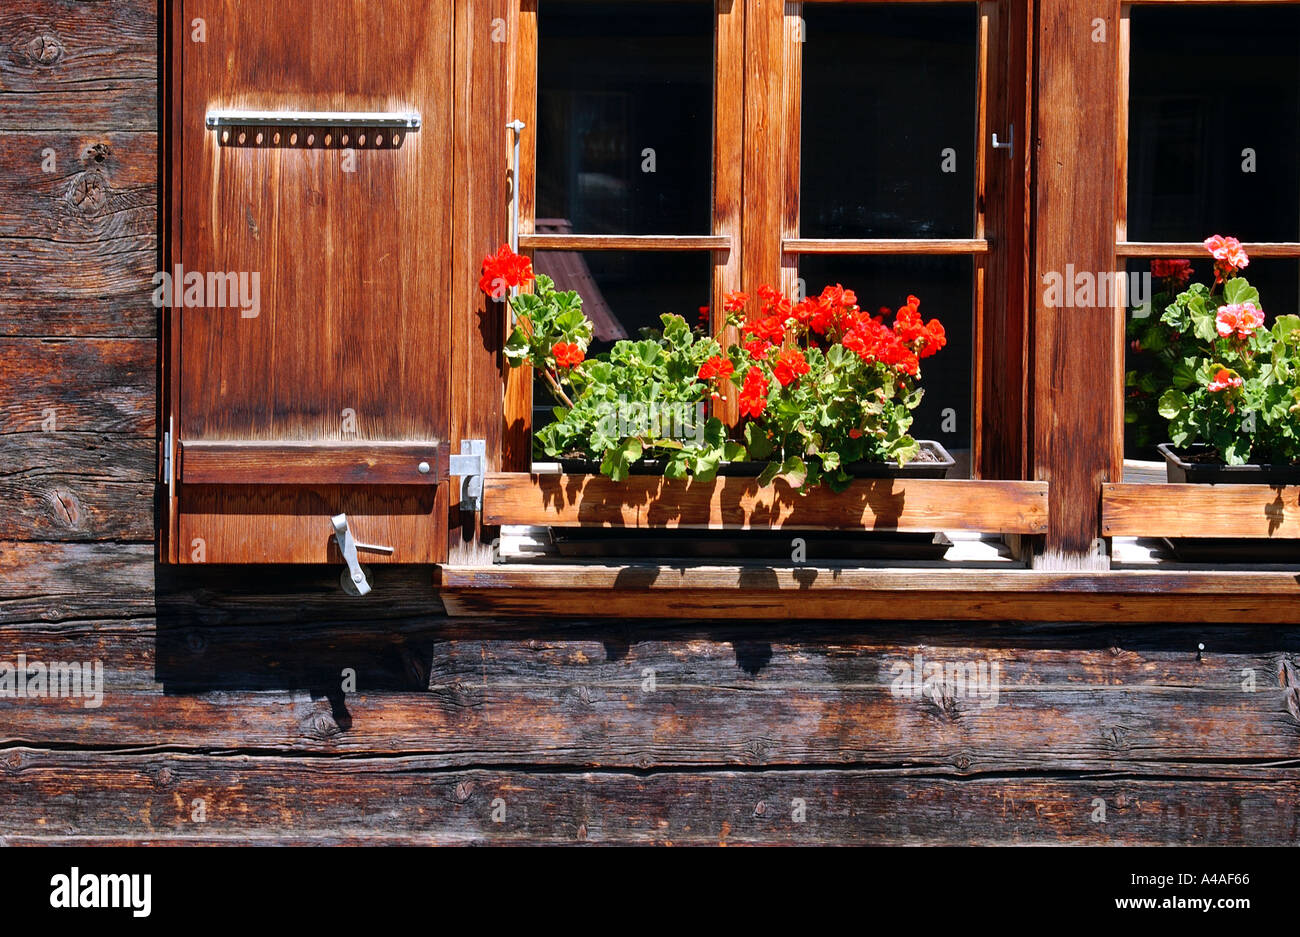 Blumenkasten auf traditionelle Schweizer Chalet in Interlaken Schweiz  Stockfotografie - Alamy